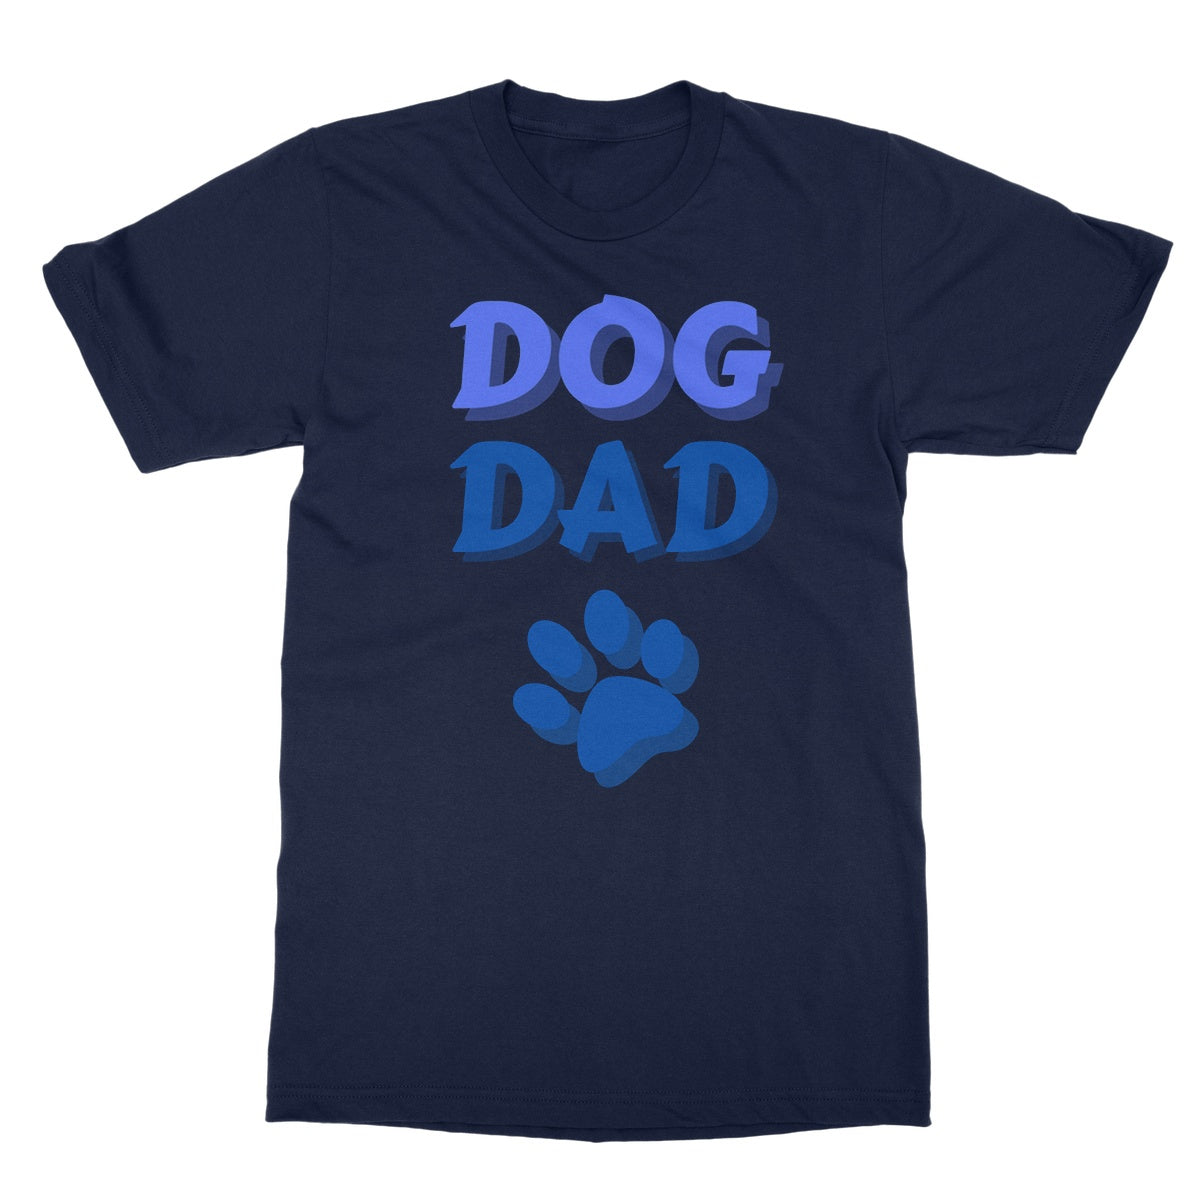 dog dad t shirt navy